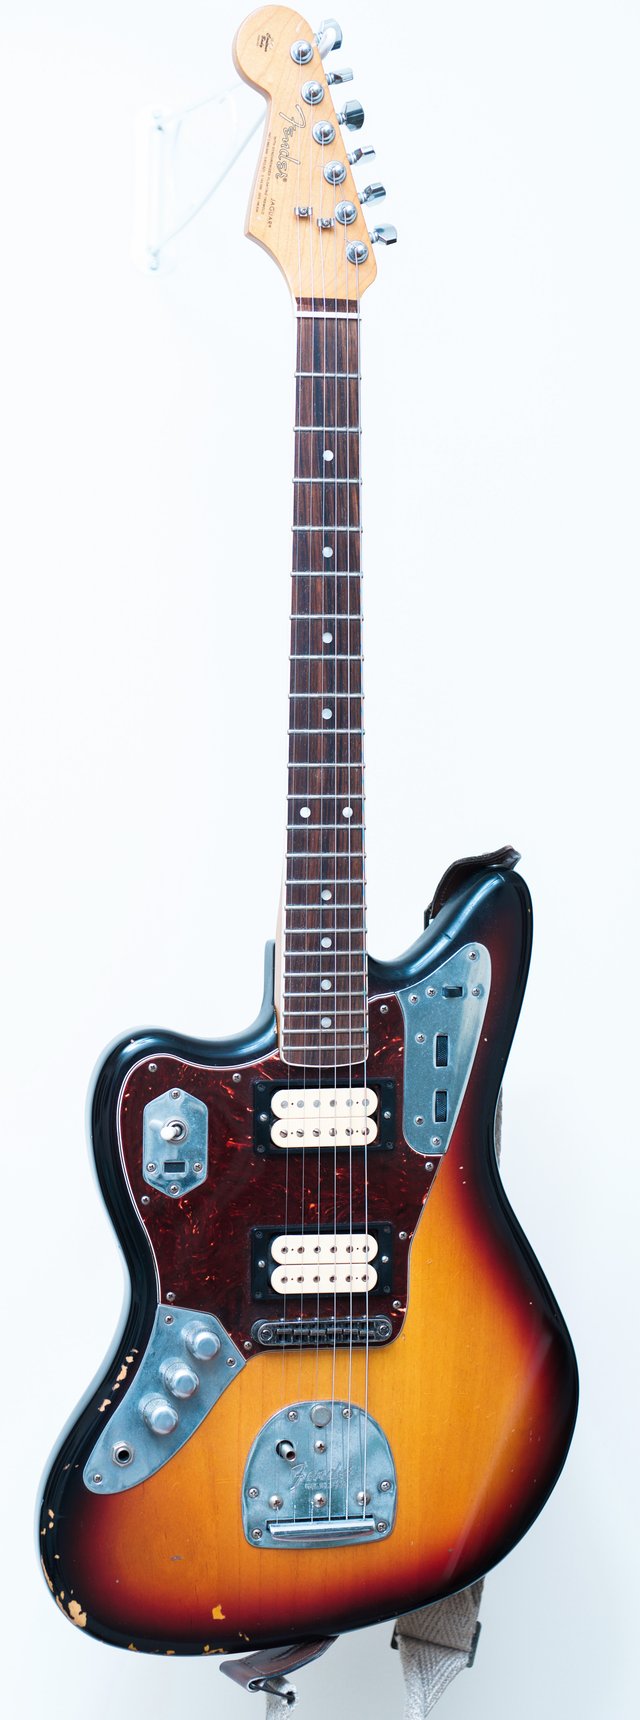 Kurt Cobain's model of Fender Jaguar